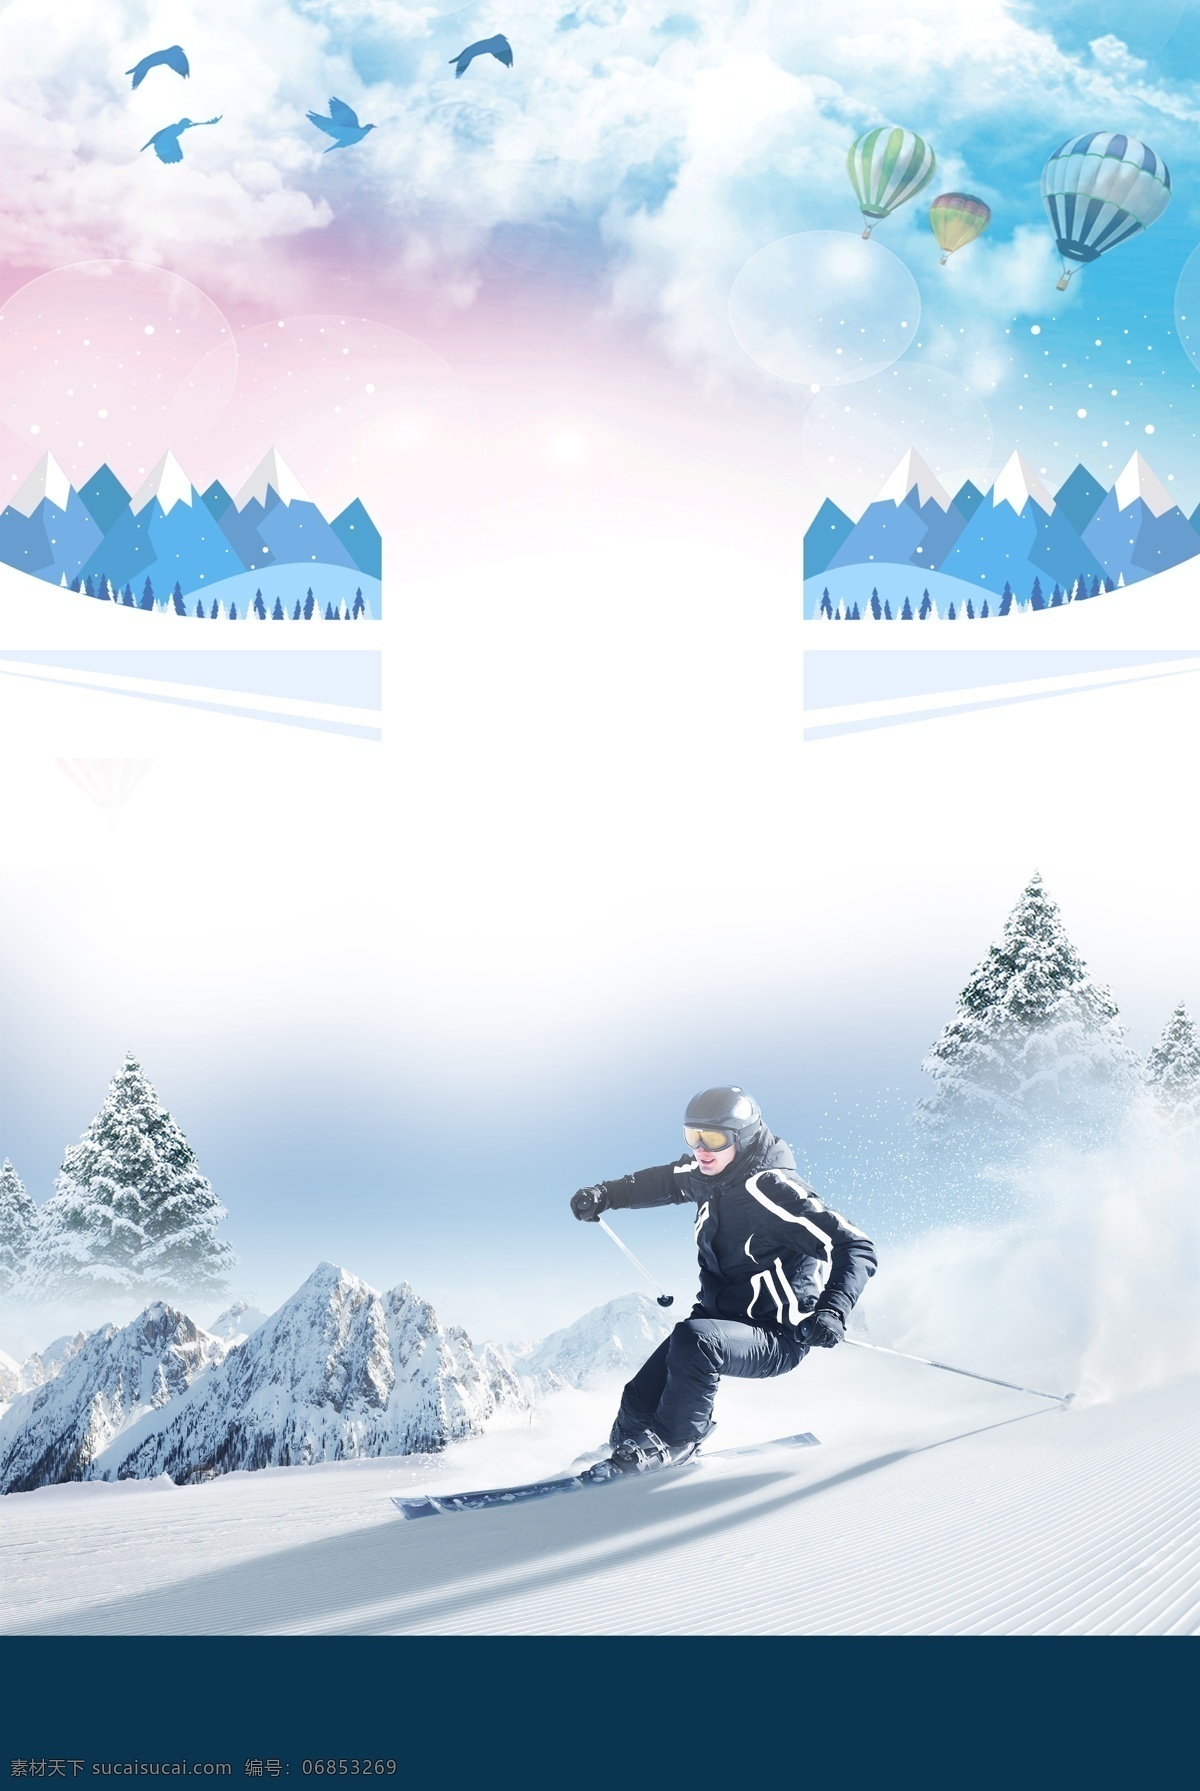 冬天 滑雪 比赛 背景 彩绘 热气球 雪花 背景设计 滑雪场 滑雪背景 冬季素材 冰雪 滑雪活动场 激情滑雪 冬季活动背景 滑雪素材